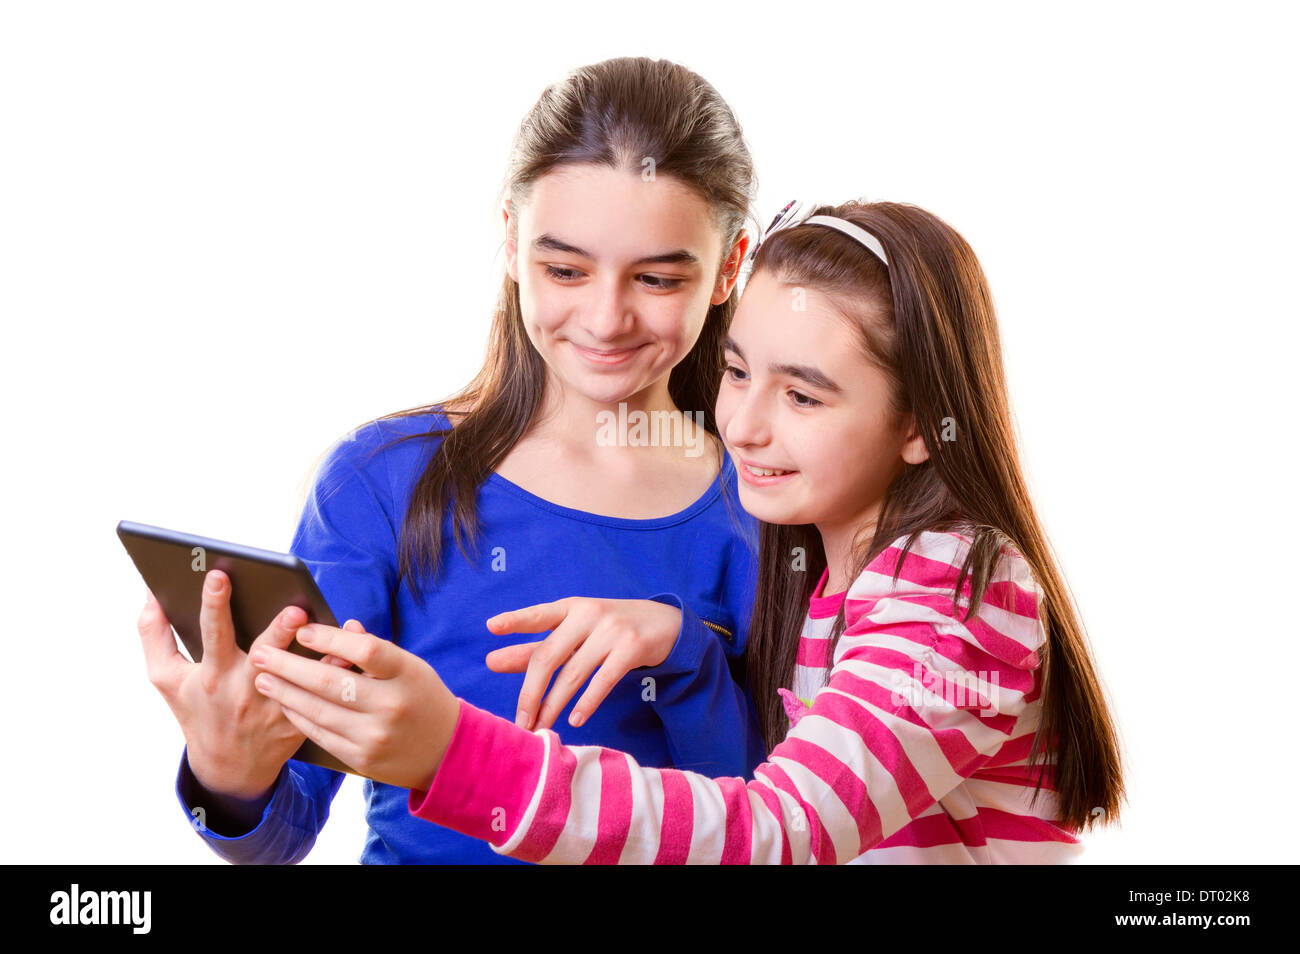 Glücklich Teenager-Mädchen mit digital-Tablette auf weißem Hintergrund Stockfoto